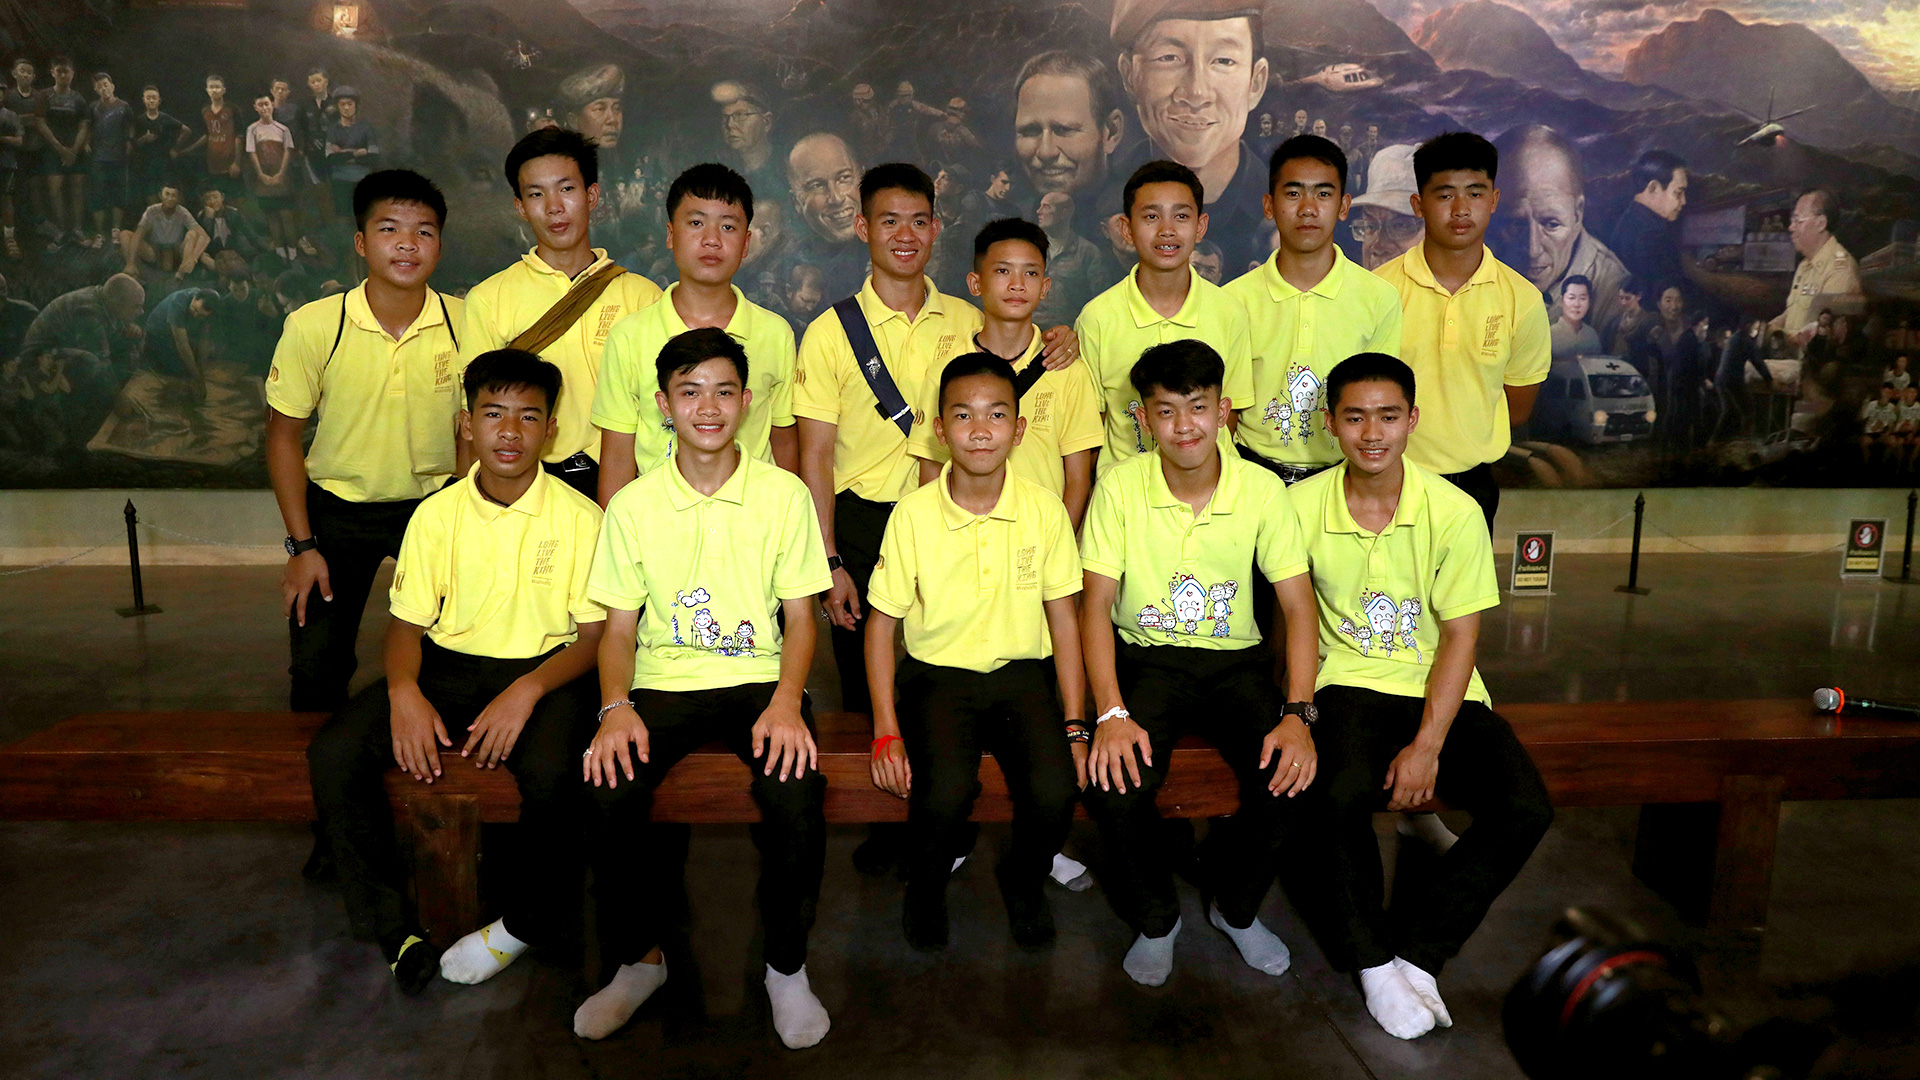 En 2019, antes de la pandemia, los niños regresaron a la cueva Tham Luang. Once de los doce fueron iniciados como novicios en una tradición budista tailandesa para quienes sufren adversidad (REUTERS)